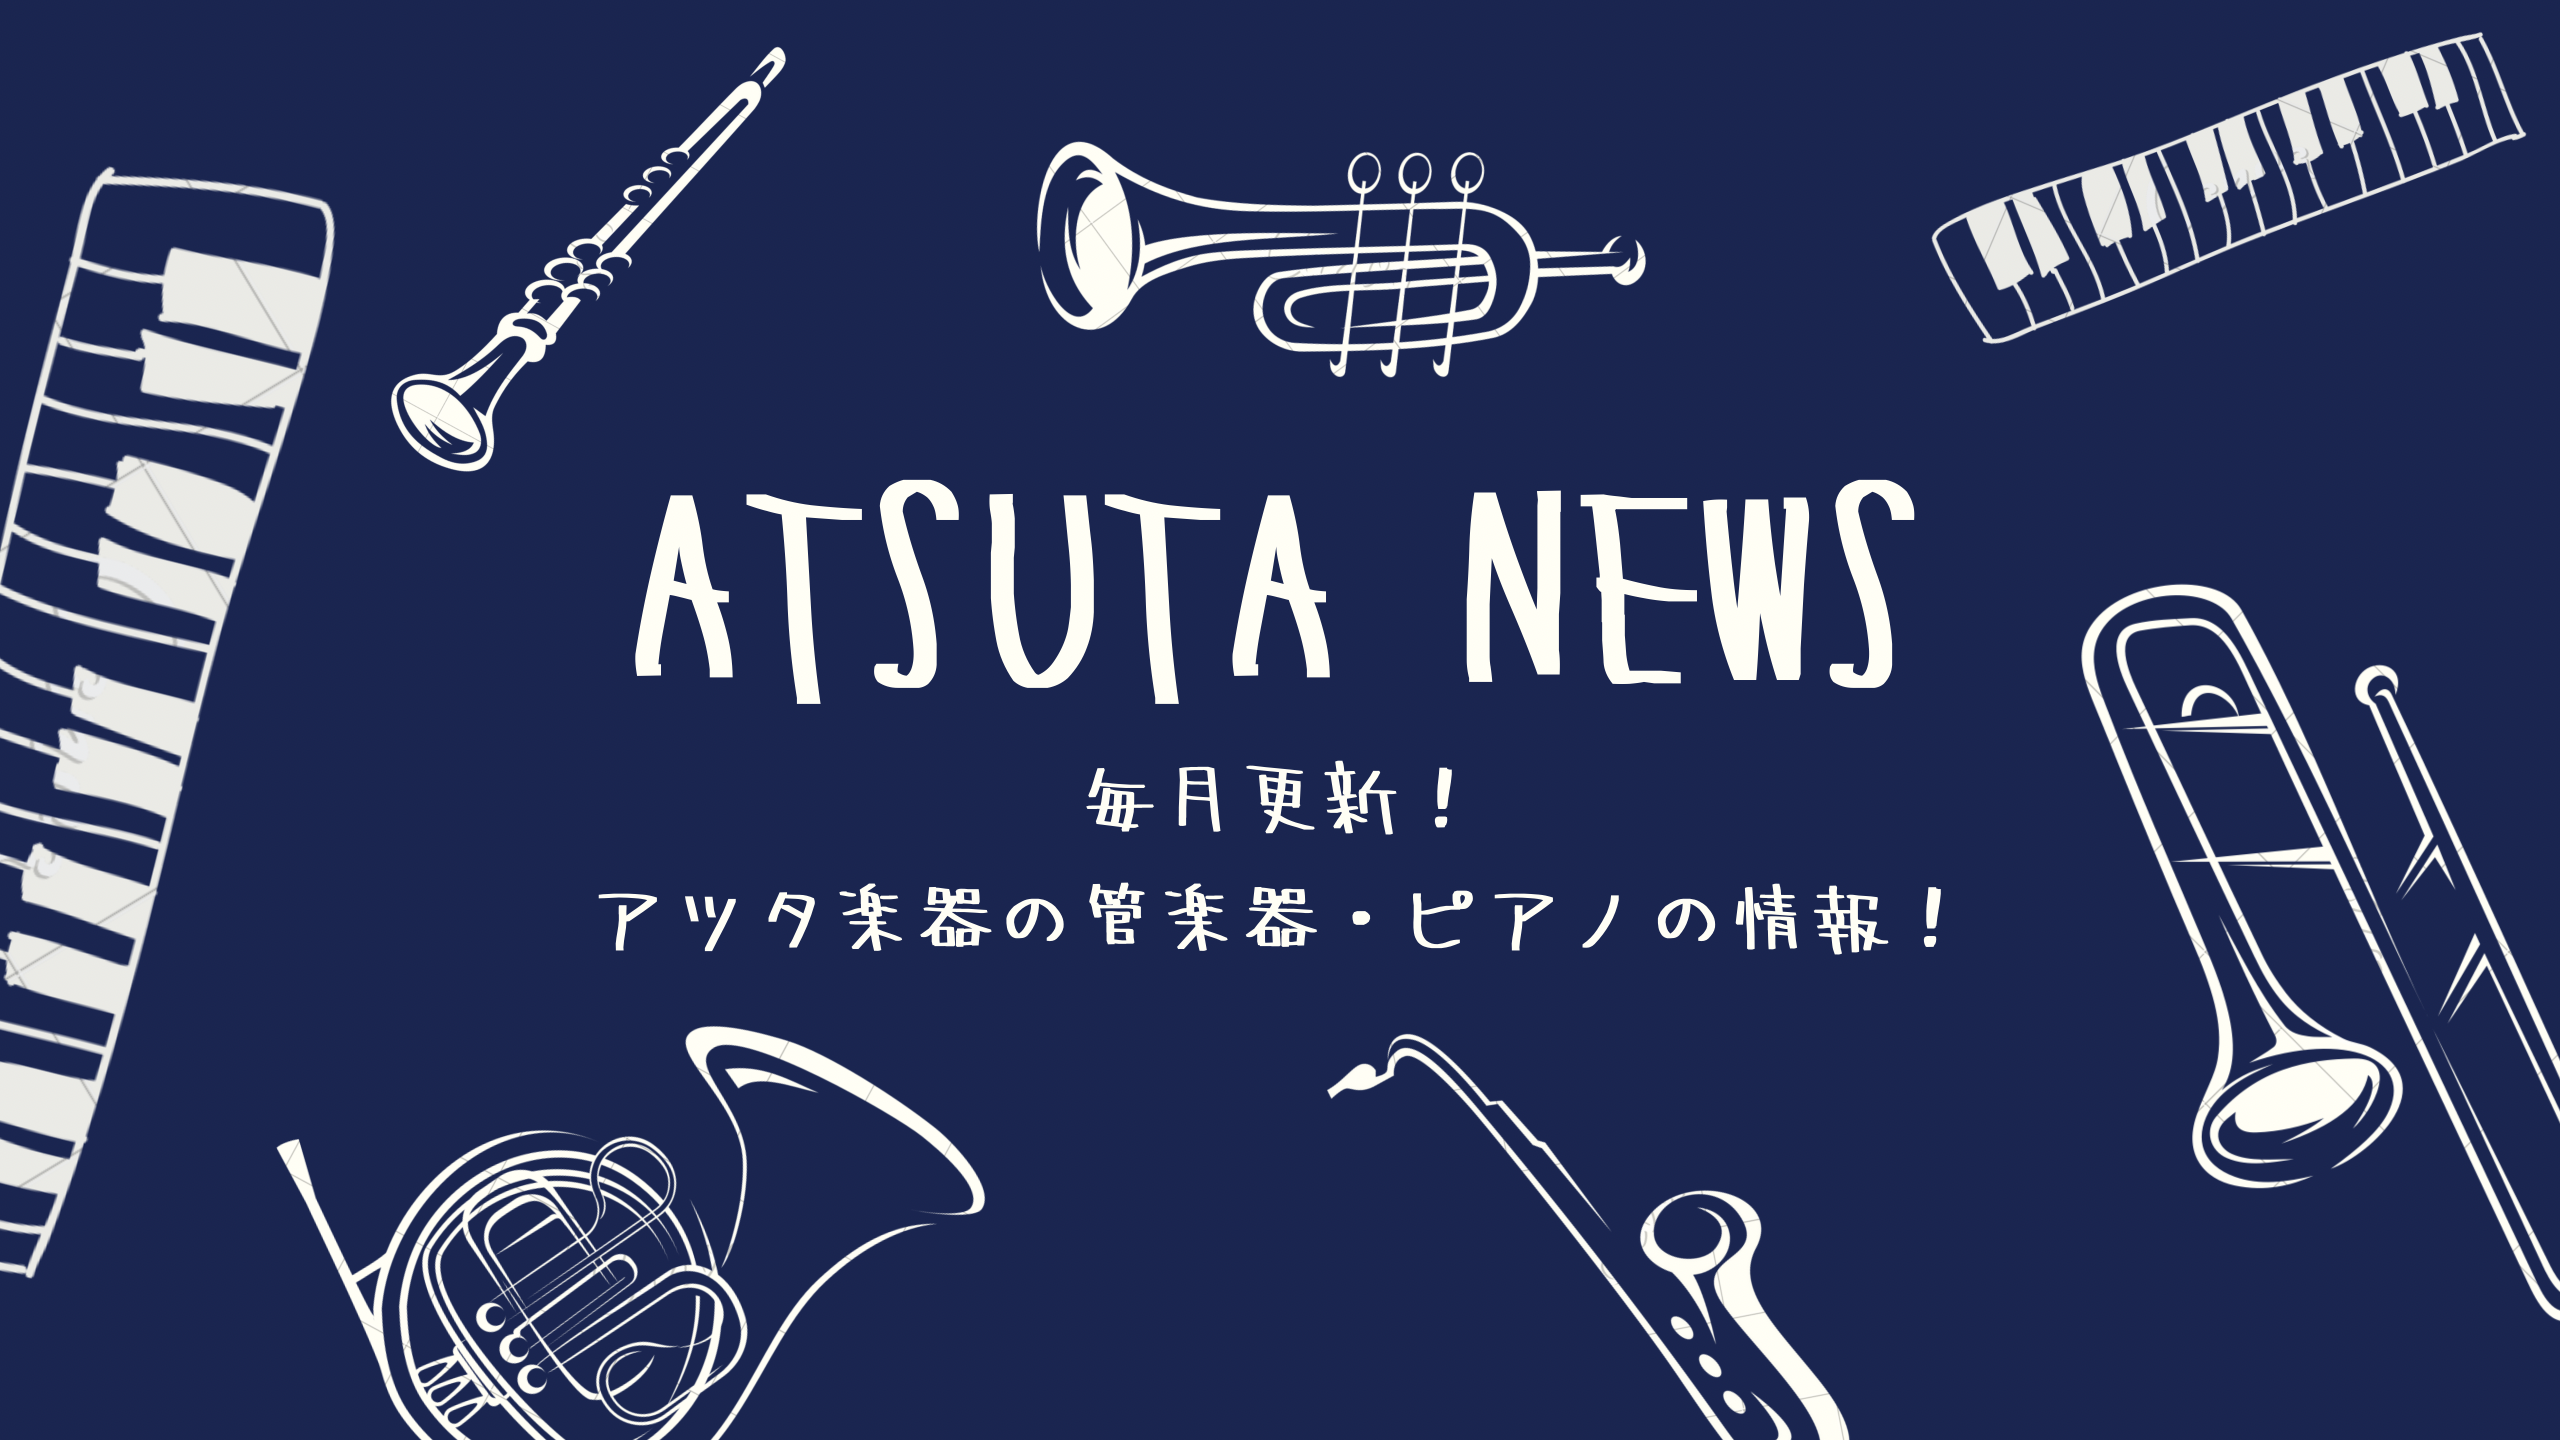 【ATSUTA NEWS Vol.10】